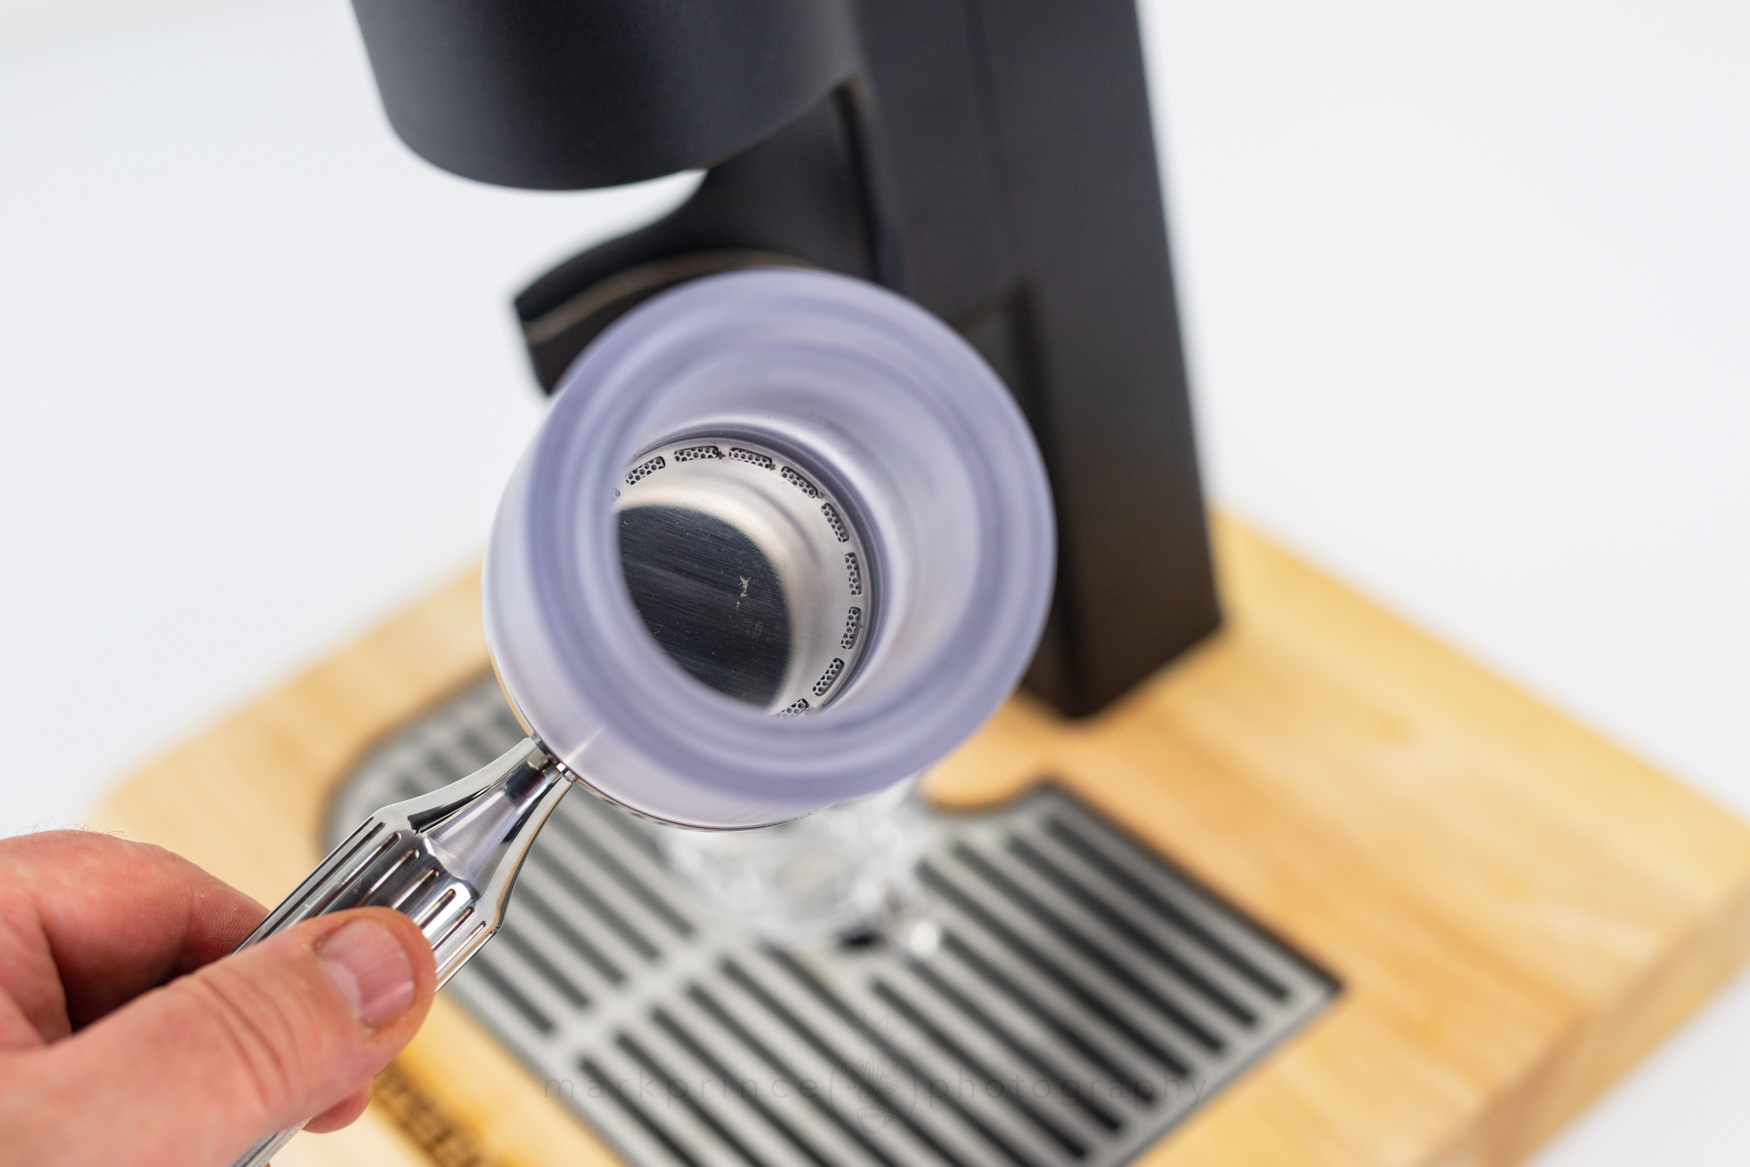 Test Drive: Superkop Manual Espresso Machine